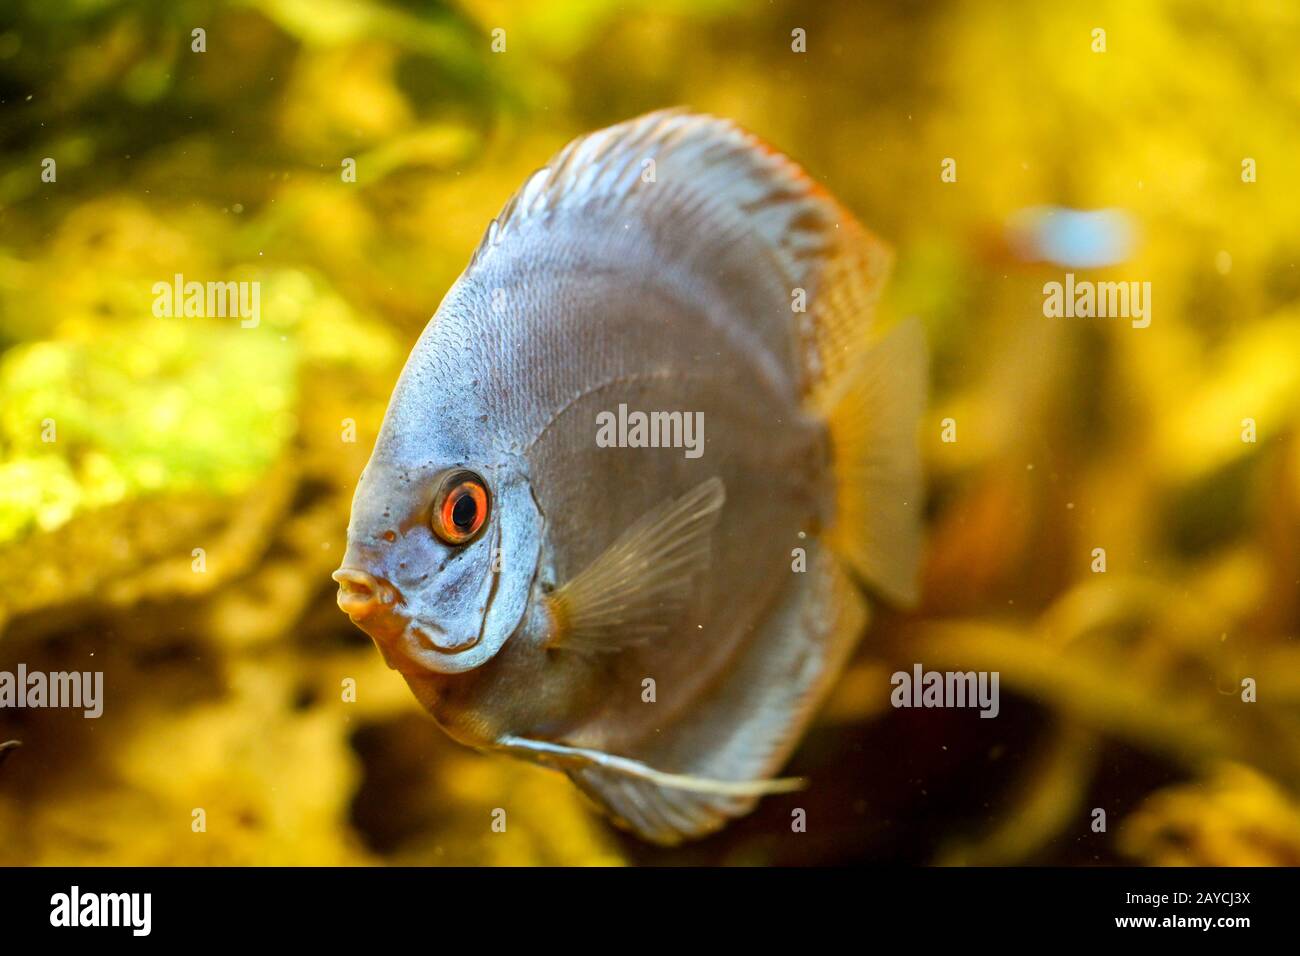 Discus fish in the aquarium. Discus are fish from the genus Symphysodon. Stock Photo